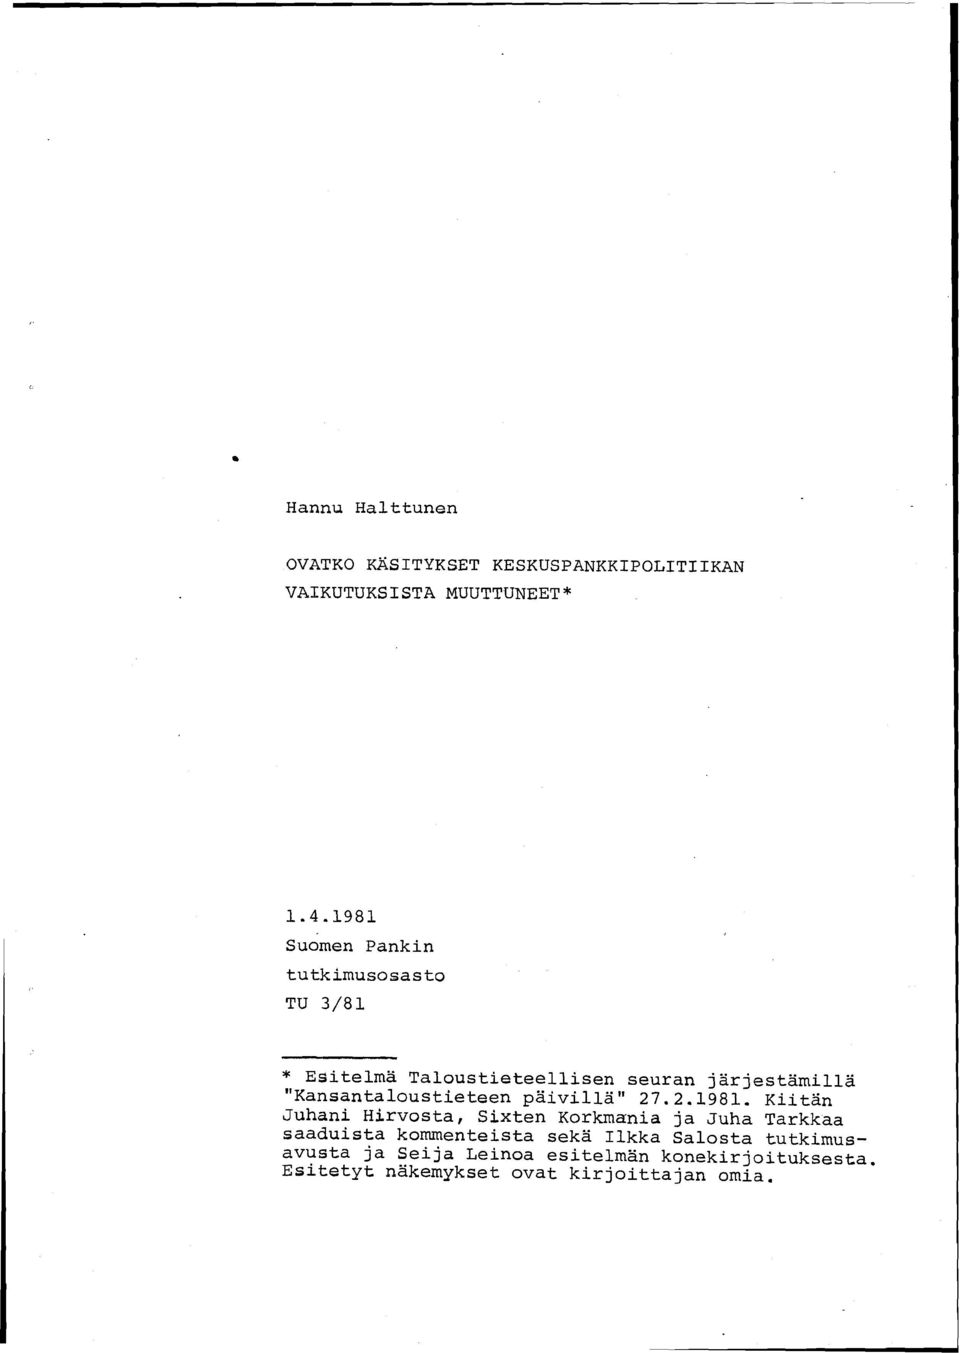 "Kansantaloustieteen päivillä" 27.2.1981.